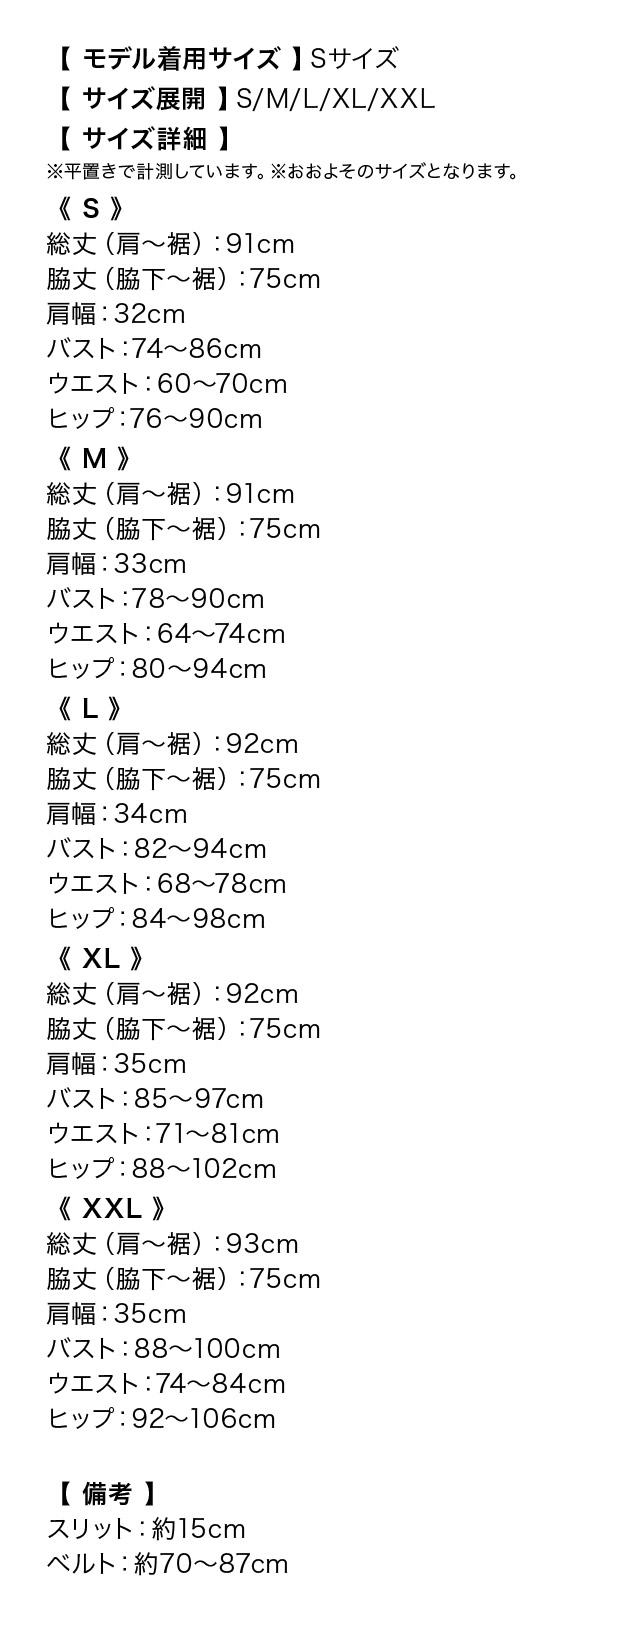 ウエストベルト付きバイカラーVネックノースリーブタイトミニドレスのサイズ表